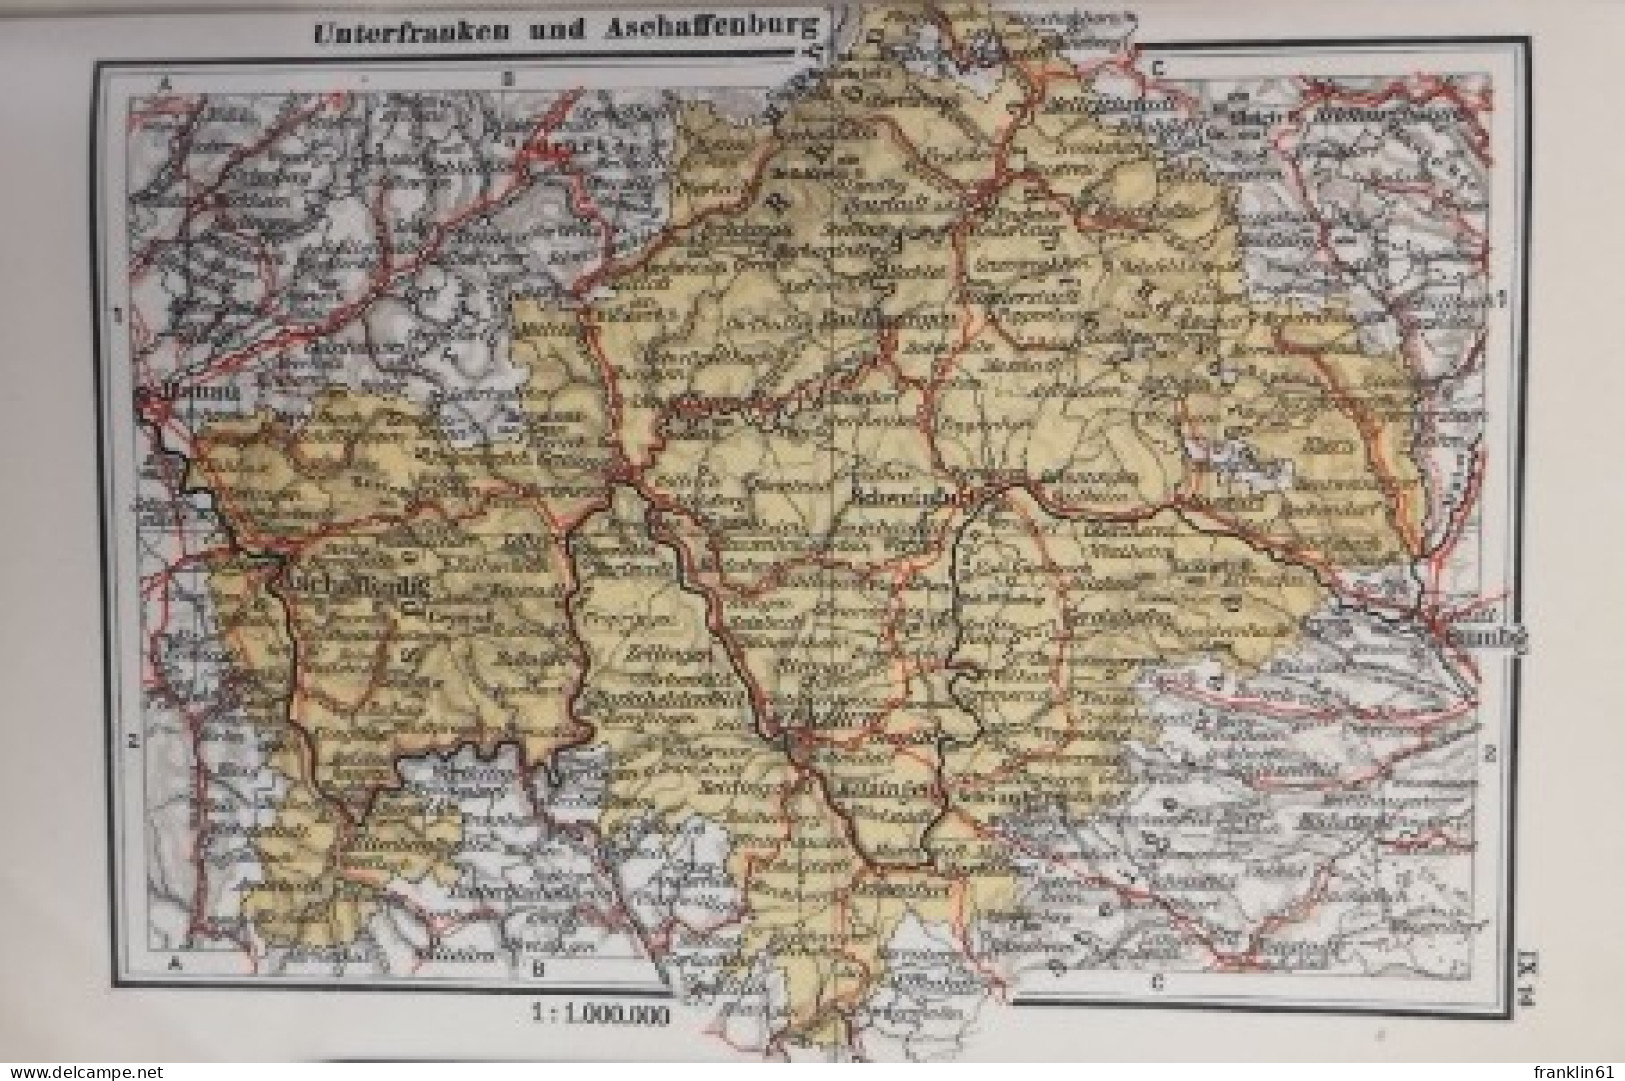 No. 9. Bayern. 16 farbige Spezialkarten mit Text und Namensverzeichnis des bayerischen Gebietes.